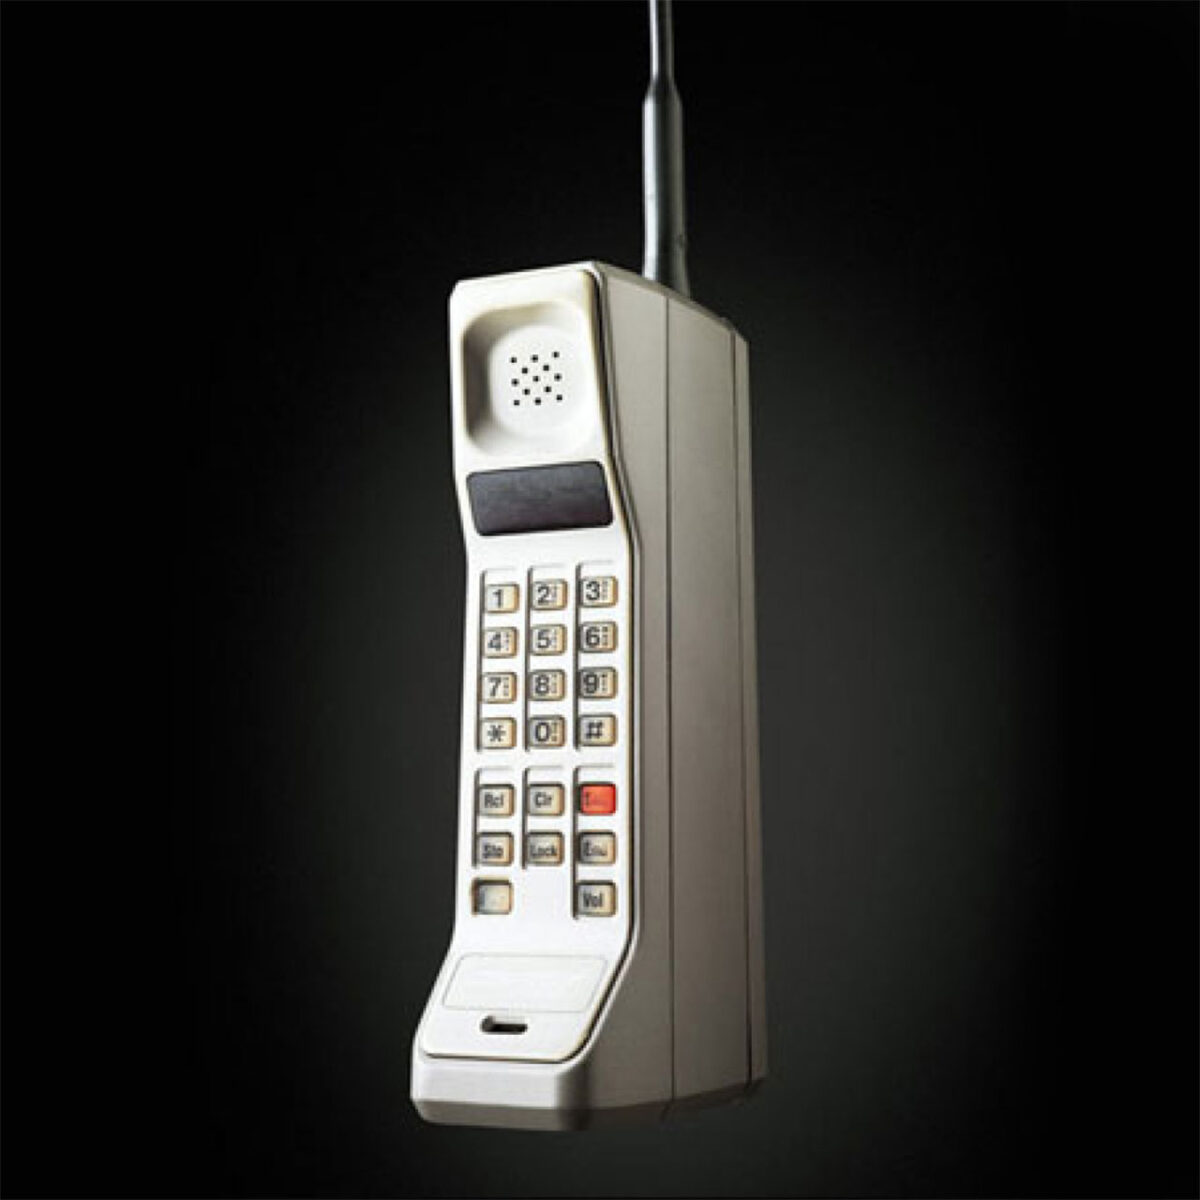 Mirs телефон. Motorola DYNATAC 8000x. Телефон Motorola DYNATAC 8000x. Motorola DYNATAC 8000x 1983 год. Первый сотовый телефон Motorola DYNATAC 8000x.